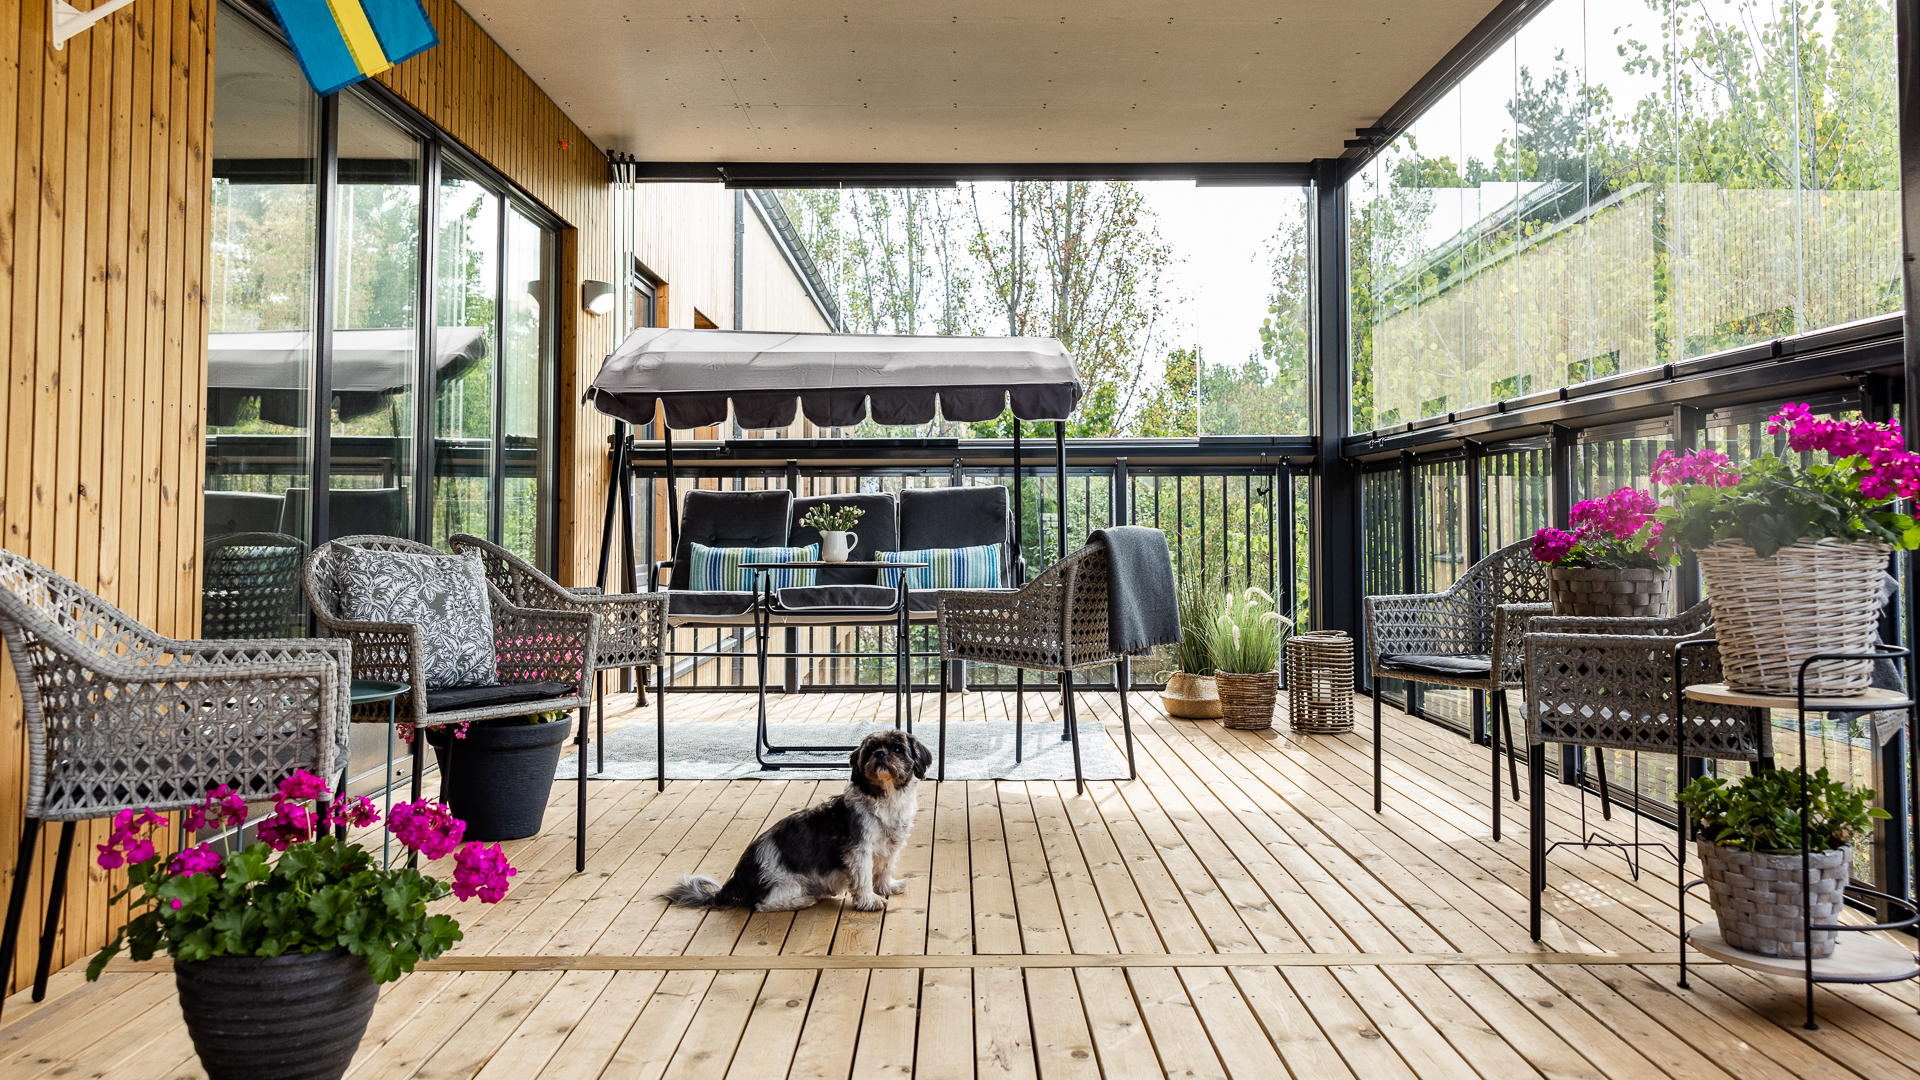 Lydiahemmets terrass med hamock, blommor och liten hund i förgrunden